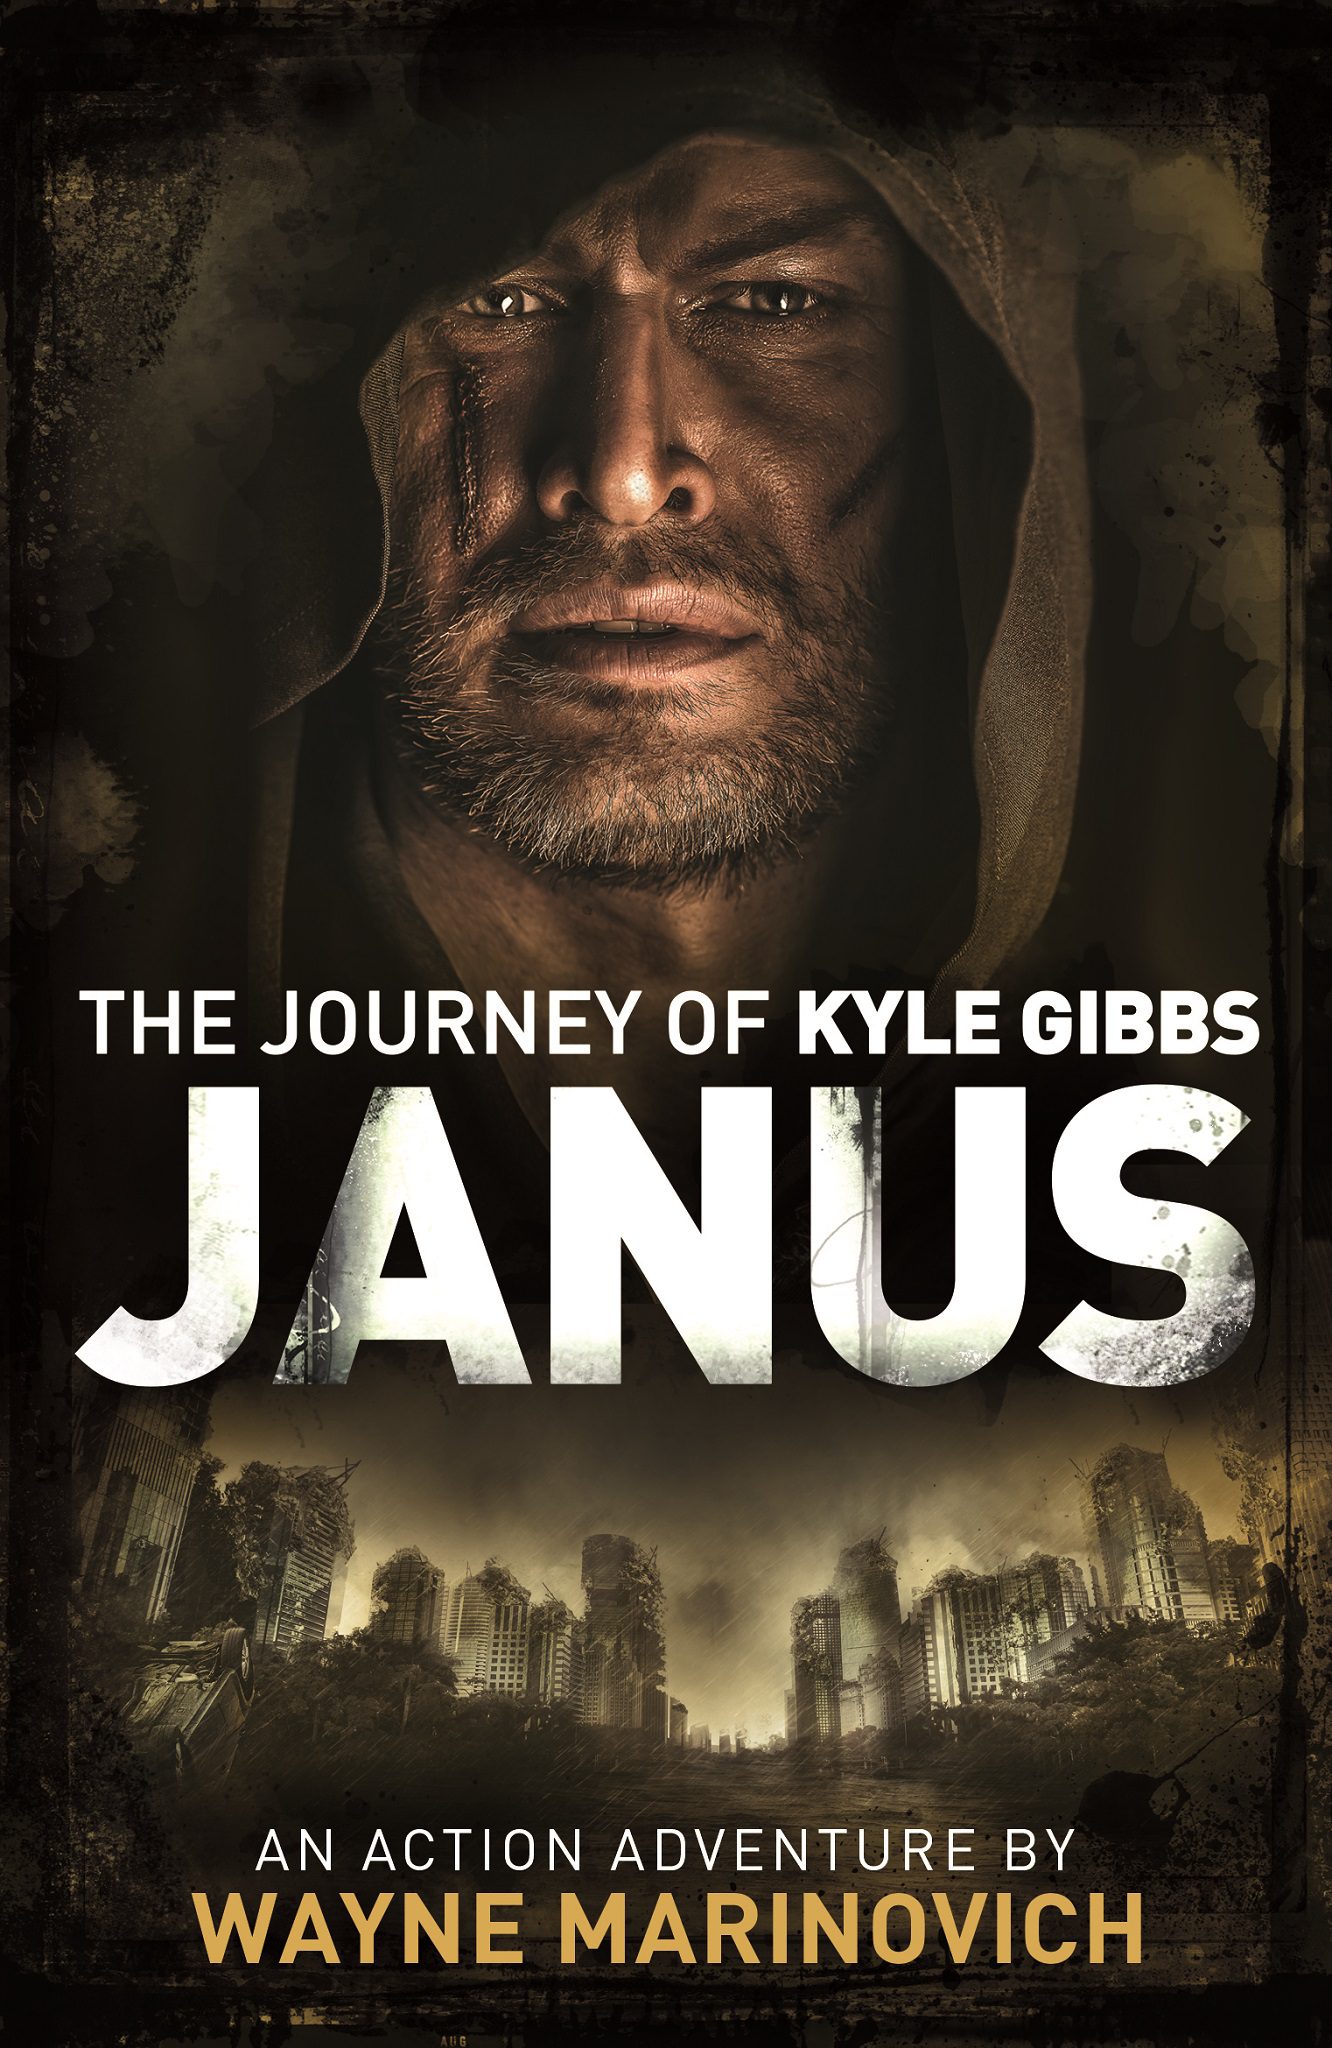 "Janus - The Kyle Gibbs Series by Wayne Marinovich"